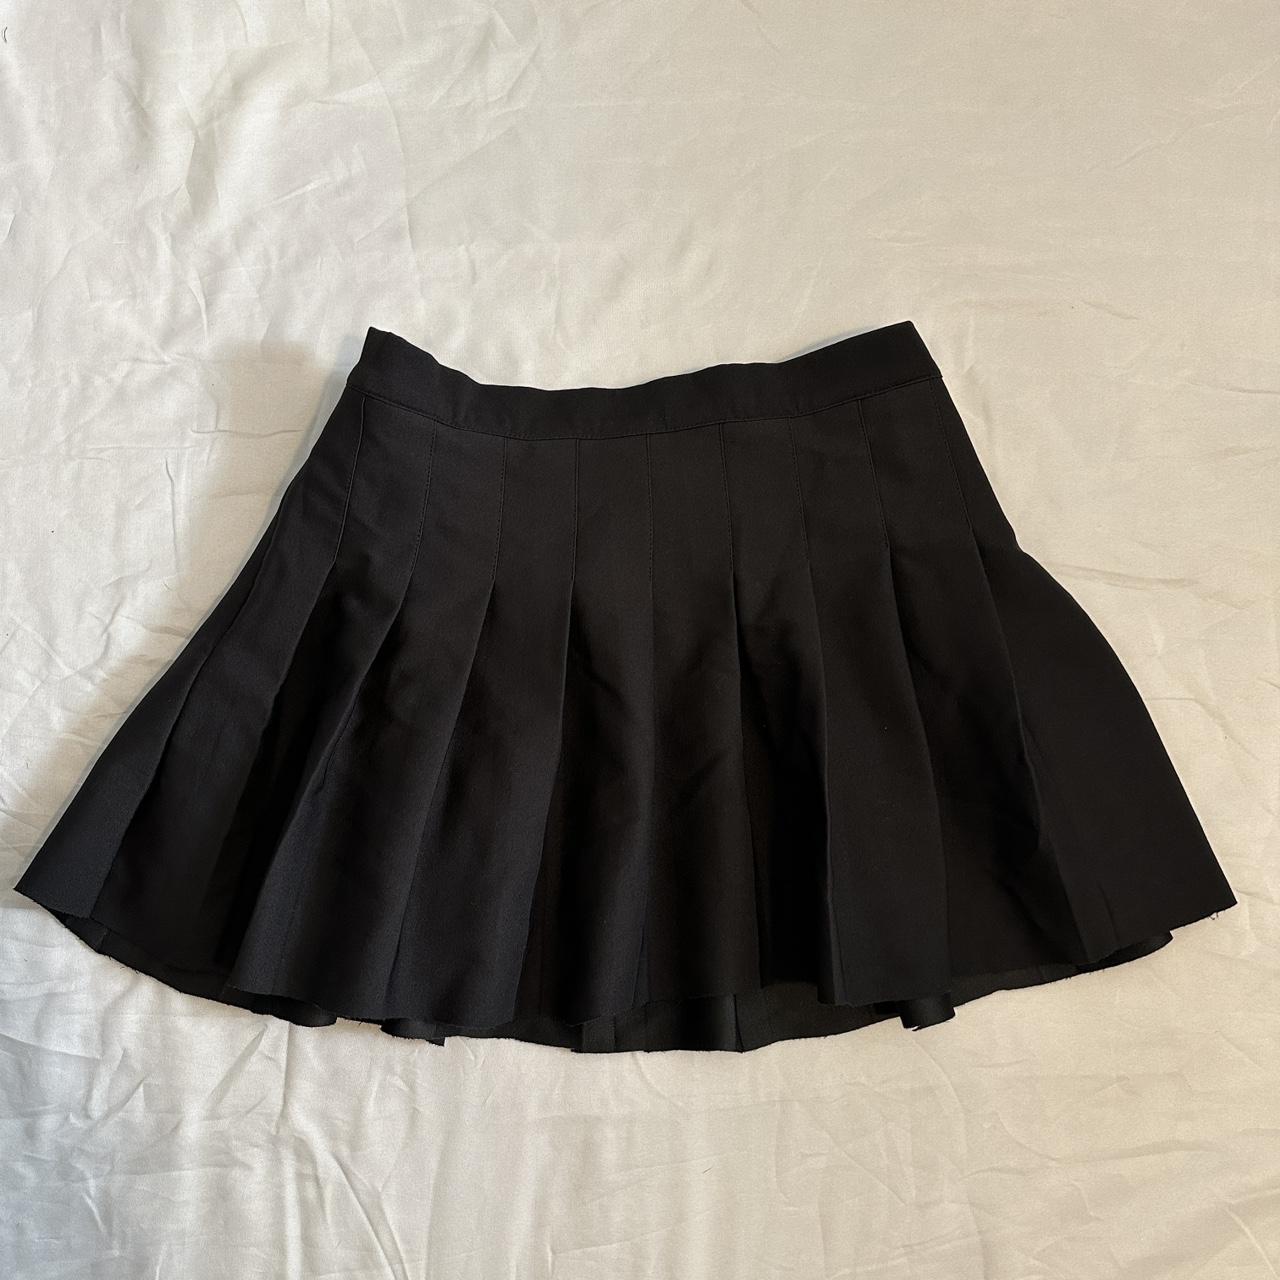 cute black sangtree schoolgirl pleated skirt!... - Depop